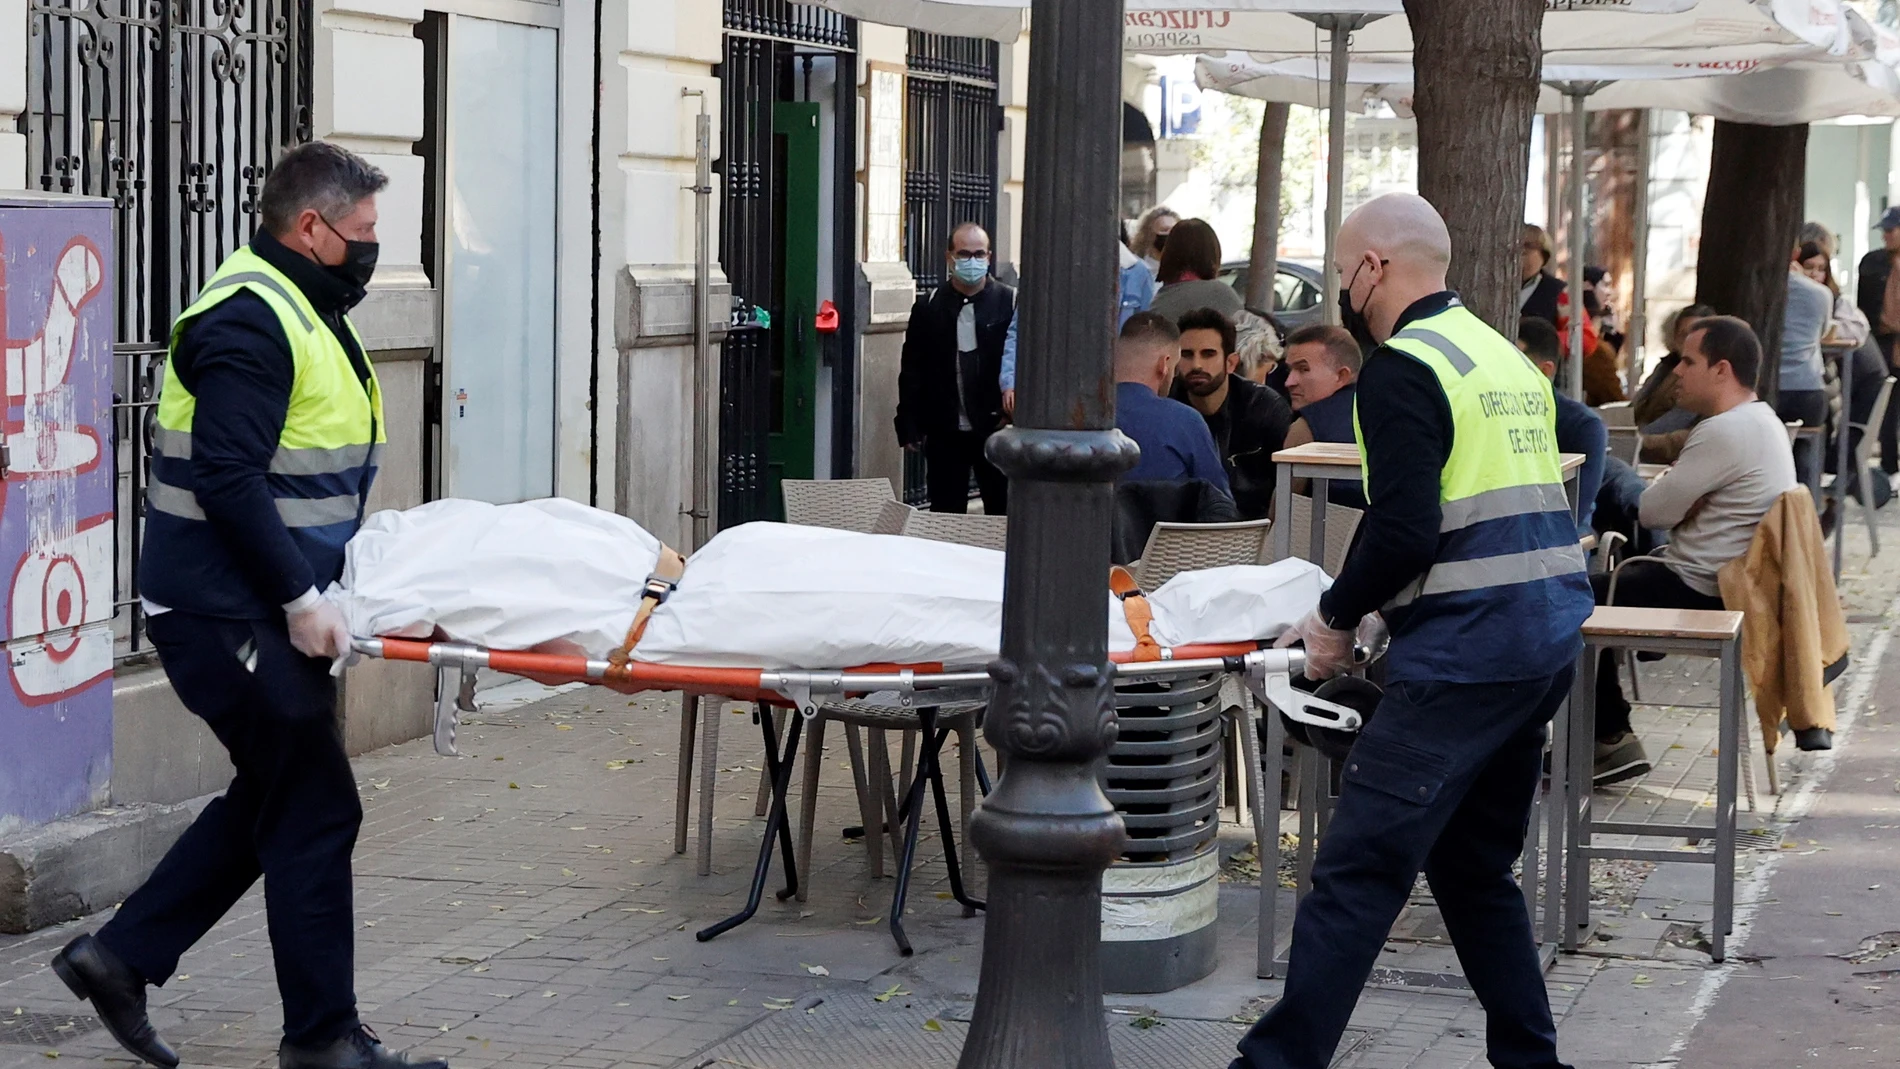 Operarios del retén fúnebre sacan el cadáver de mujer de 30 años de edad que ha sido encontrada este sábado en una vivienda de València asesinada presuntamente a manos de un hombre con el que mantenía una relación sentimental